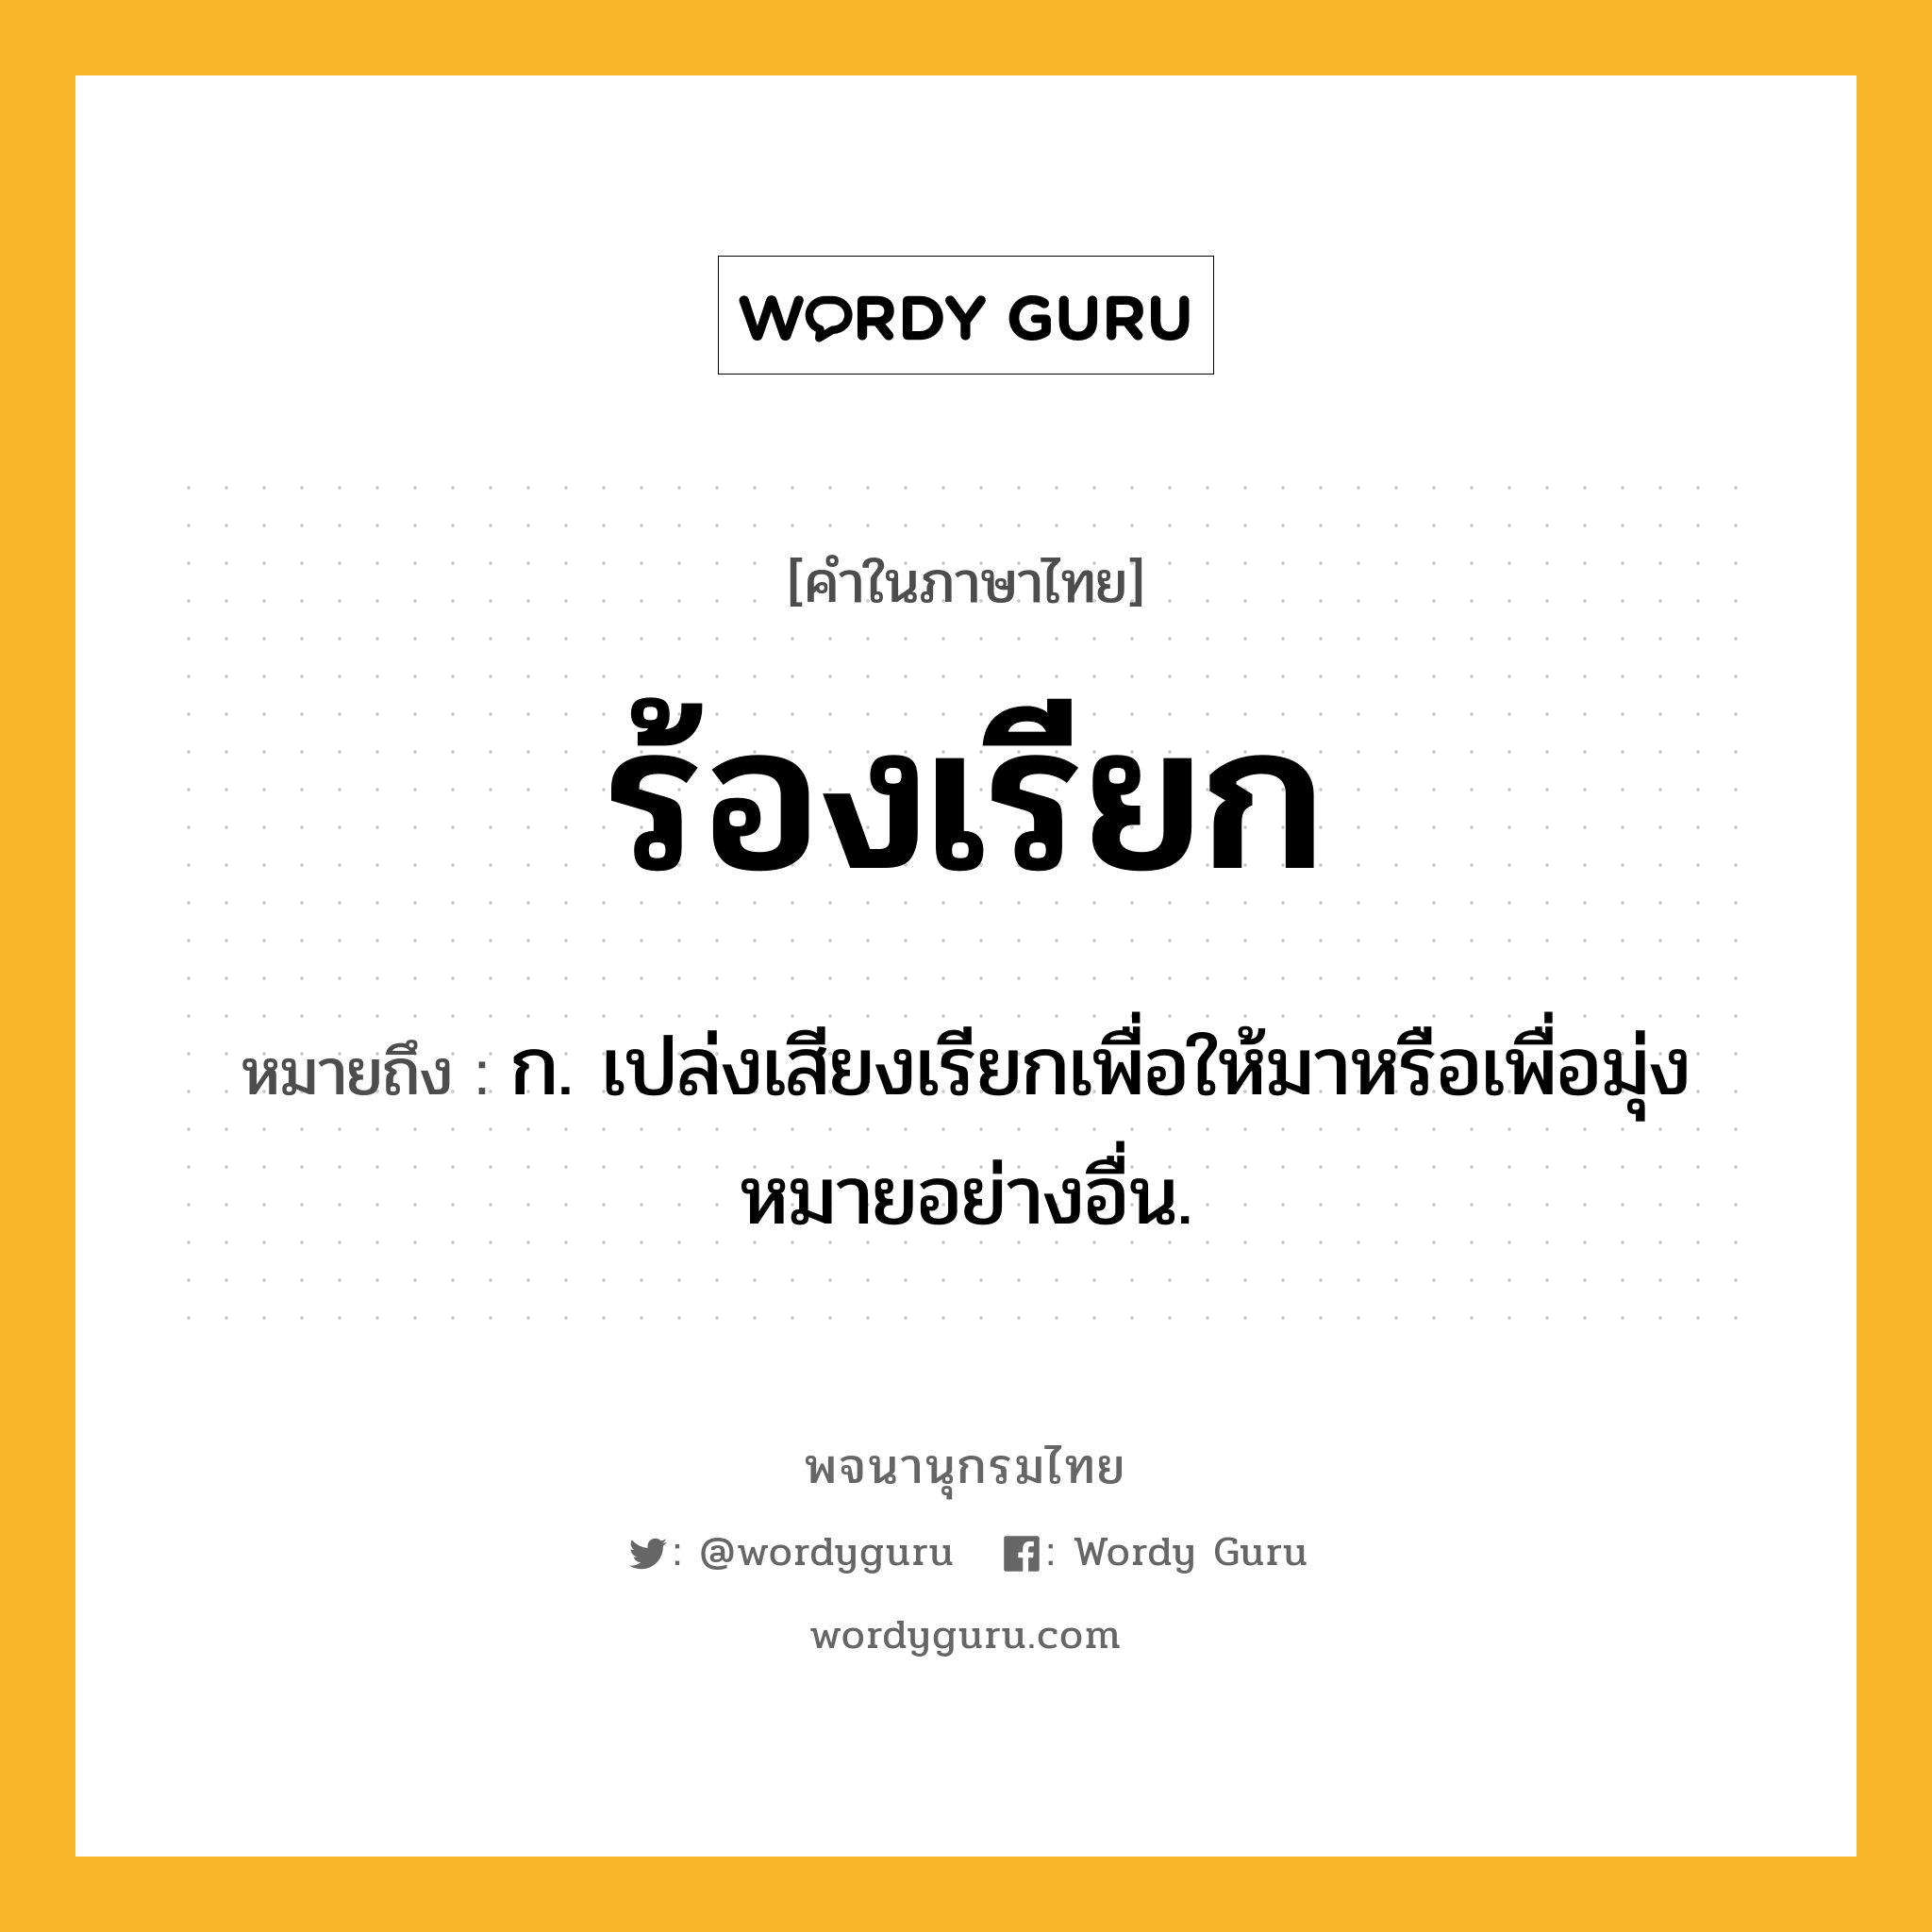 ร้องเรียก หมายถึงอะไร?, คำในภาษาไทย ร้องเรียก หมายถึง ก. เปล่งเสียงเรียกเพื่อให้มาหรือเพื่อมุ่งหมายอย่างอื่น.